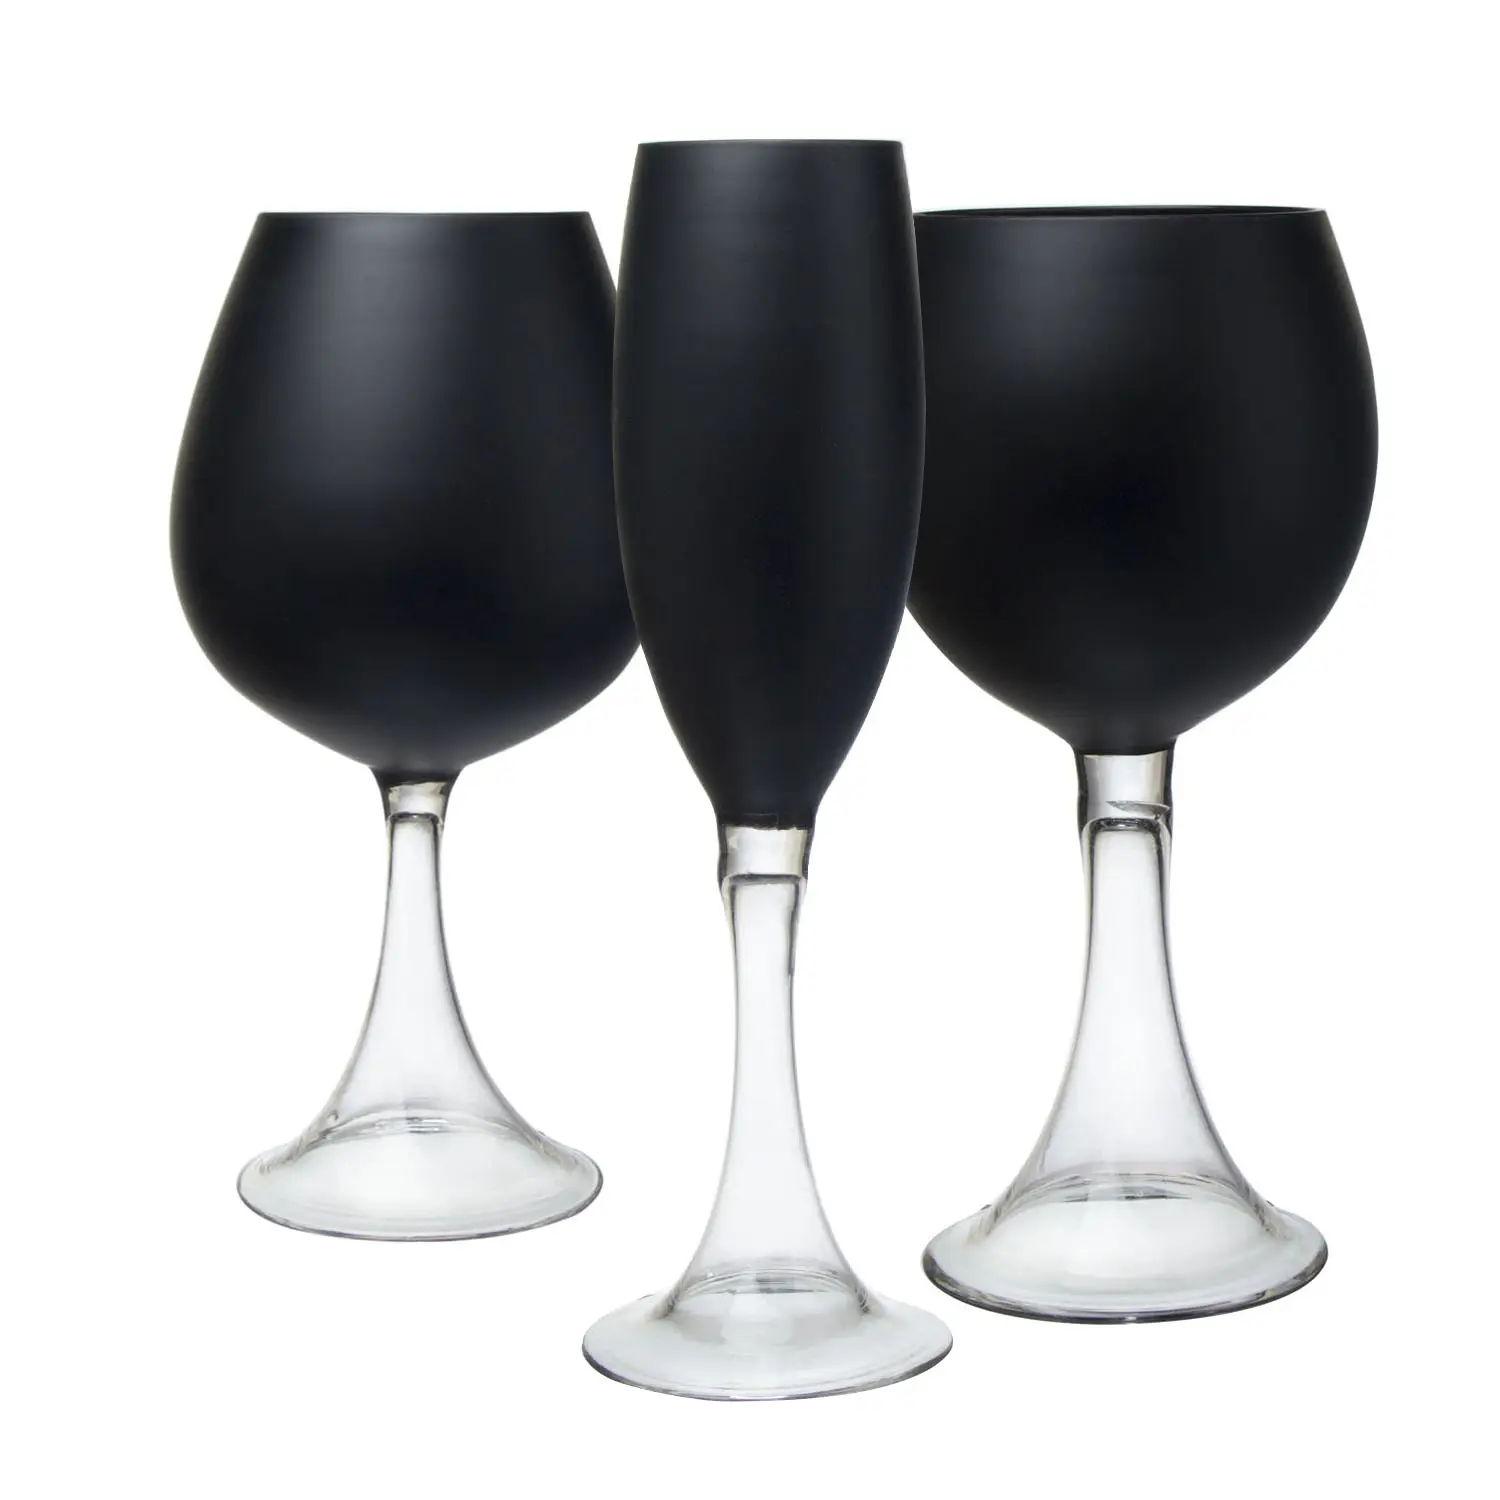 クリスタルウォーターグラスバー飲用シャンパンフルートストックワインカップセットブラックグラスゴブレット